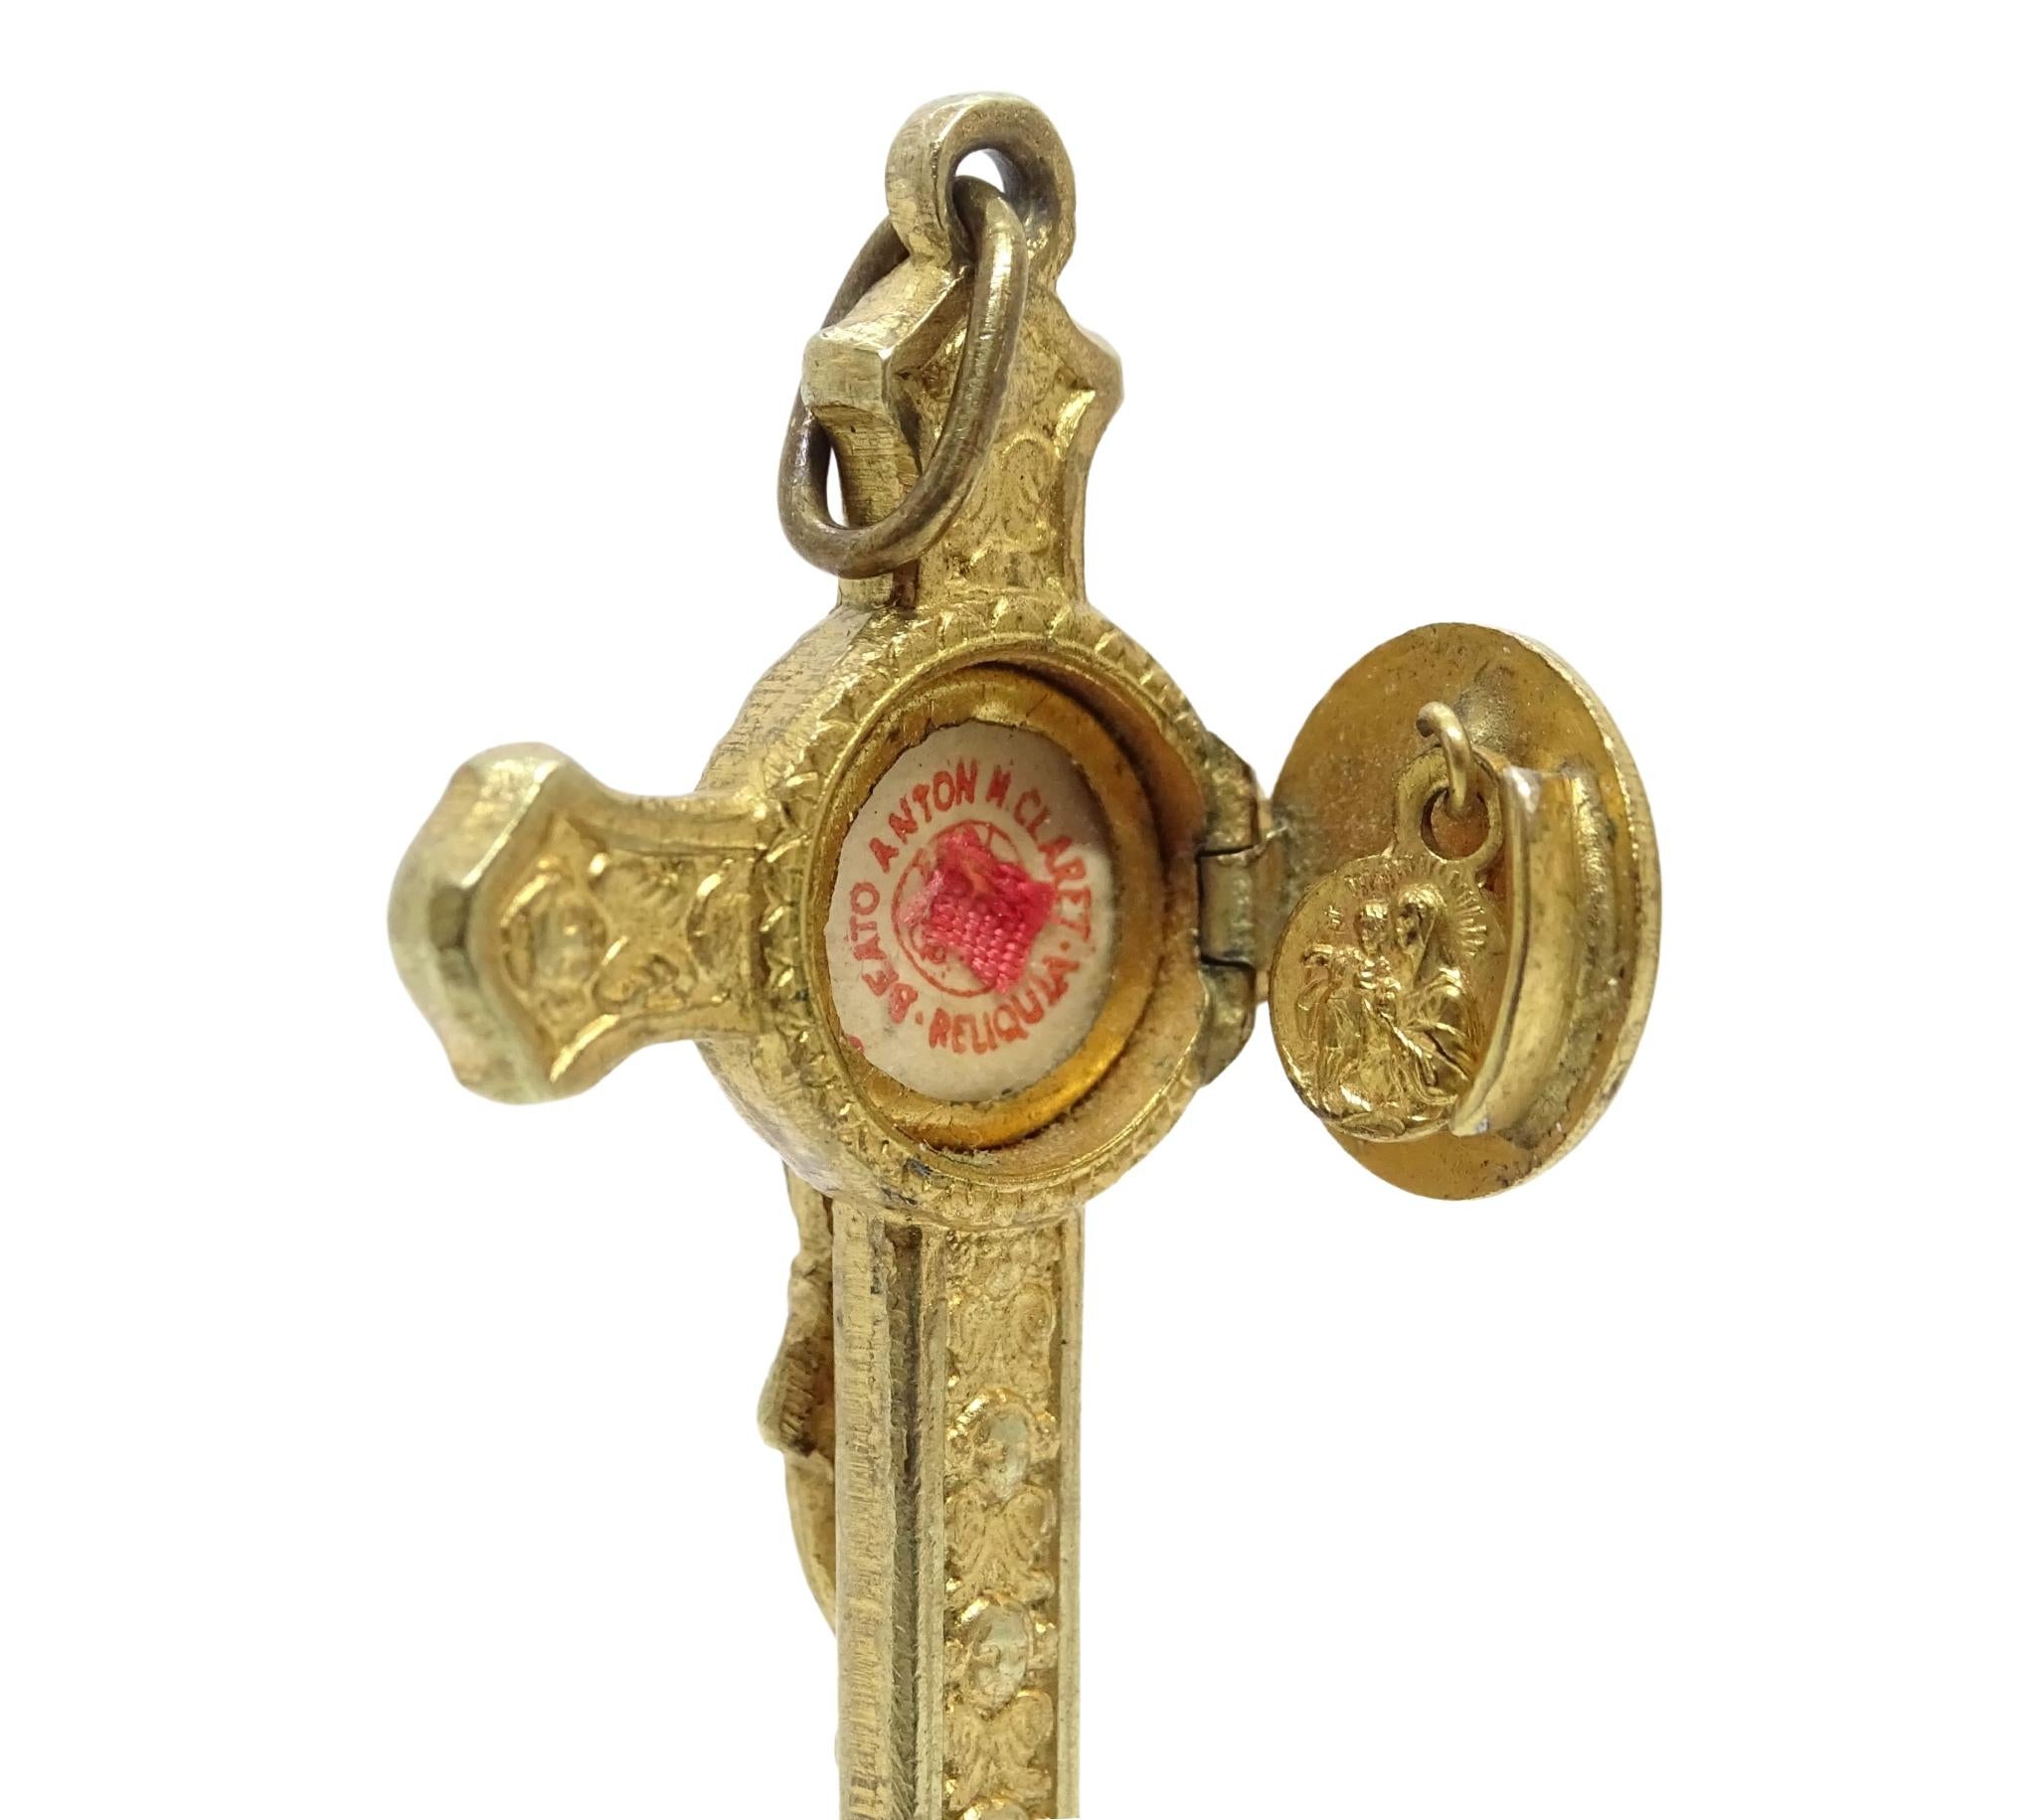 Ce pendentif reliquaire en or en forme de crucifix est dédié au saint catalan Antonio María Claret. Cette croix latine à fleurons circulaires présente un Christ crucifié en relief. Les bras de la croix sont ornés de séraphins, à l'avant et à